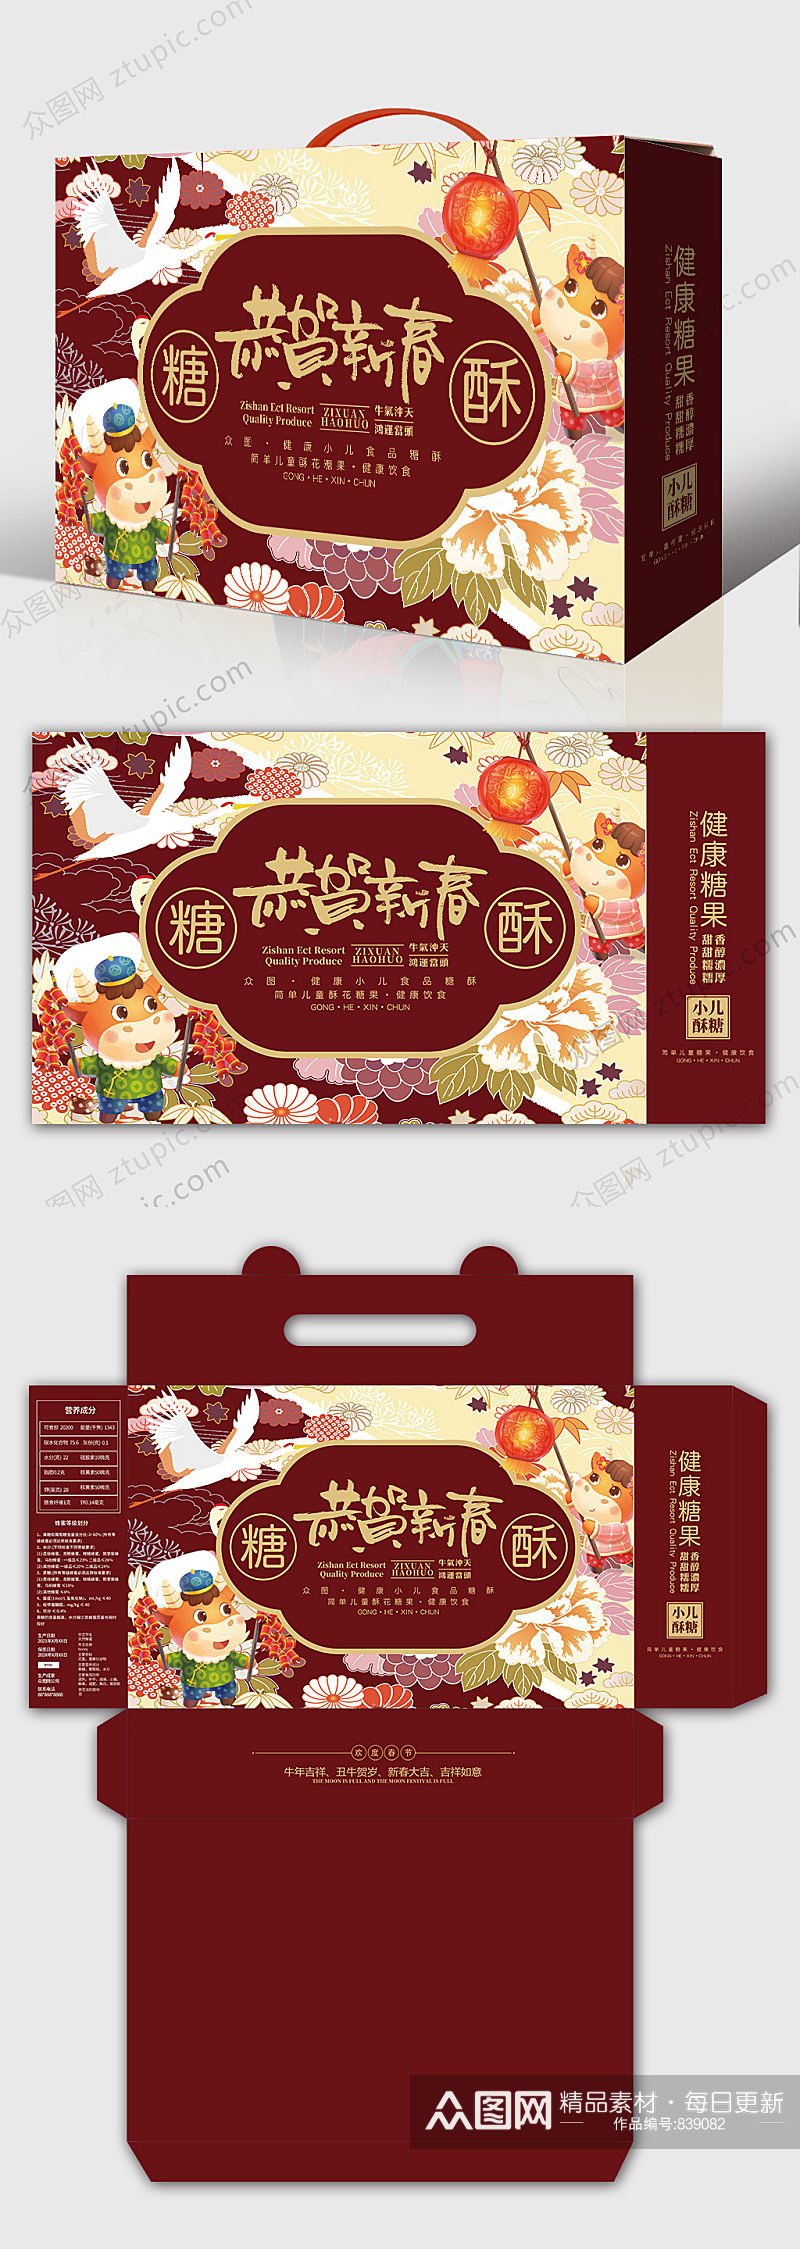 恭贺新春酥糖礼盒产品年货包装包装设计素材